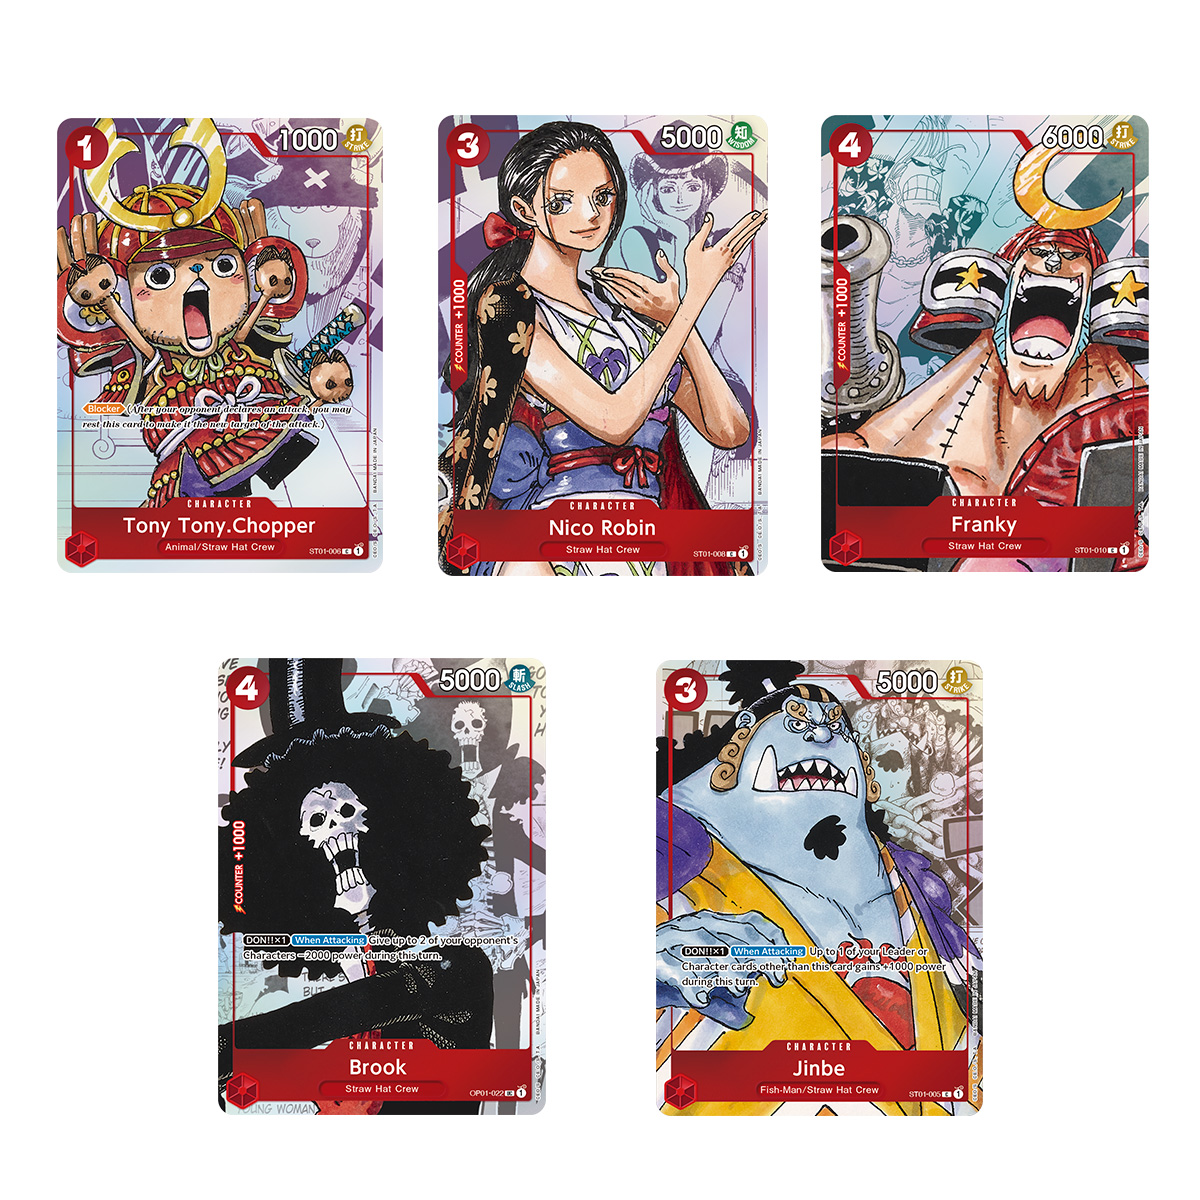 Boutique du jeu de cartes One Piece officiel, accessoires et